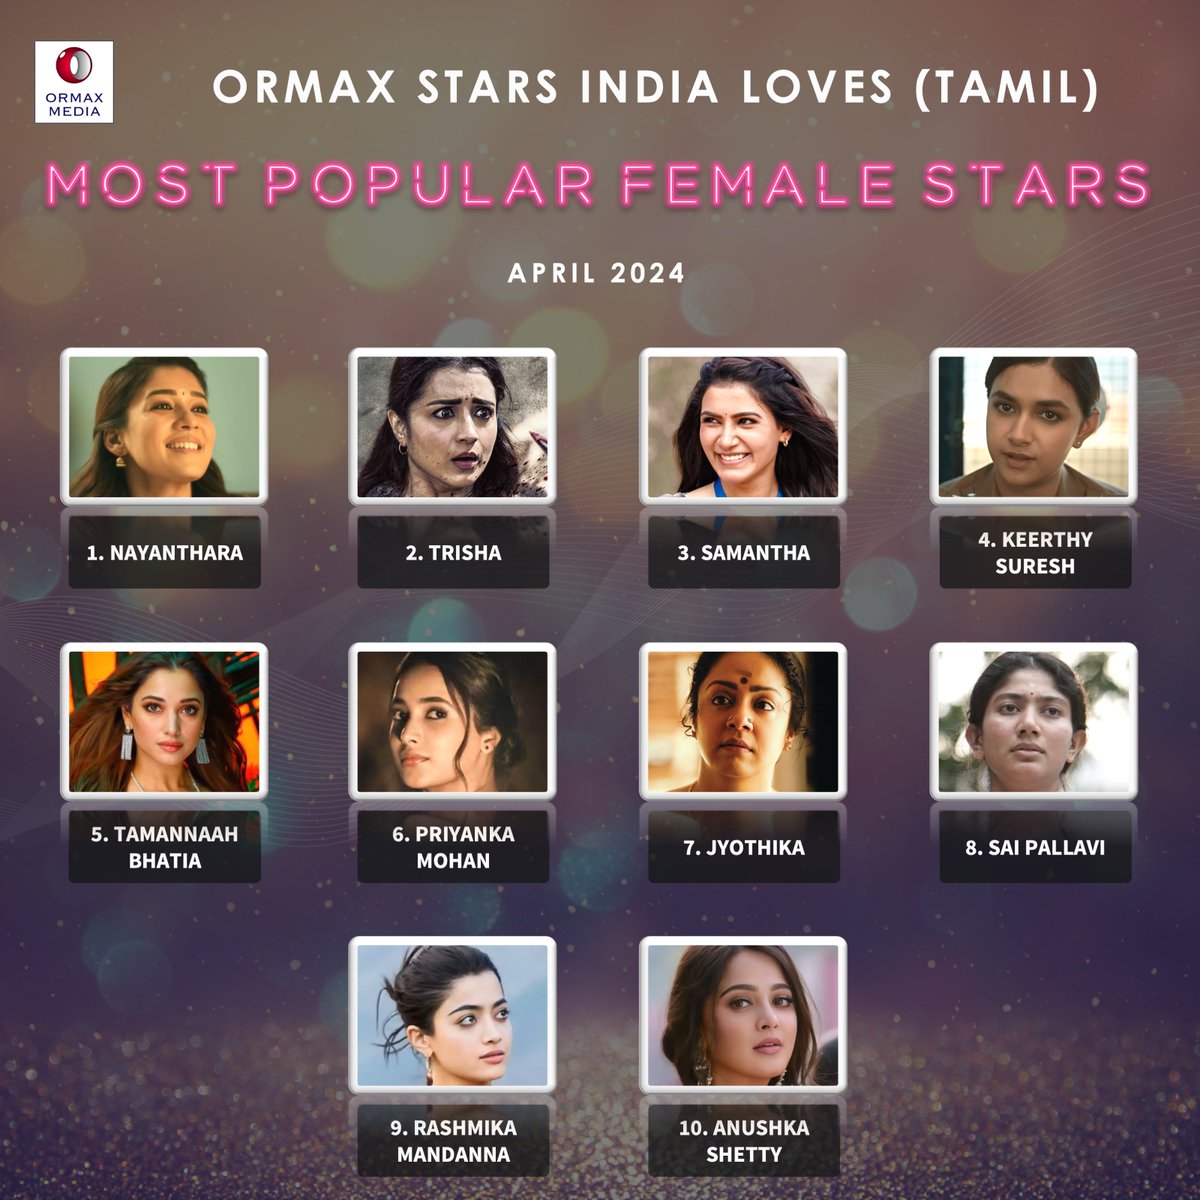 Ormax Stars India Loves: Most popular female Tamil film stars (Apr 2024) #OrmaxSIL